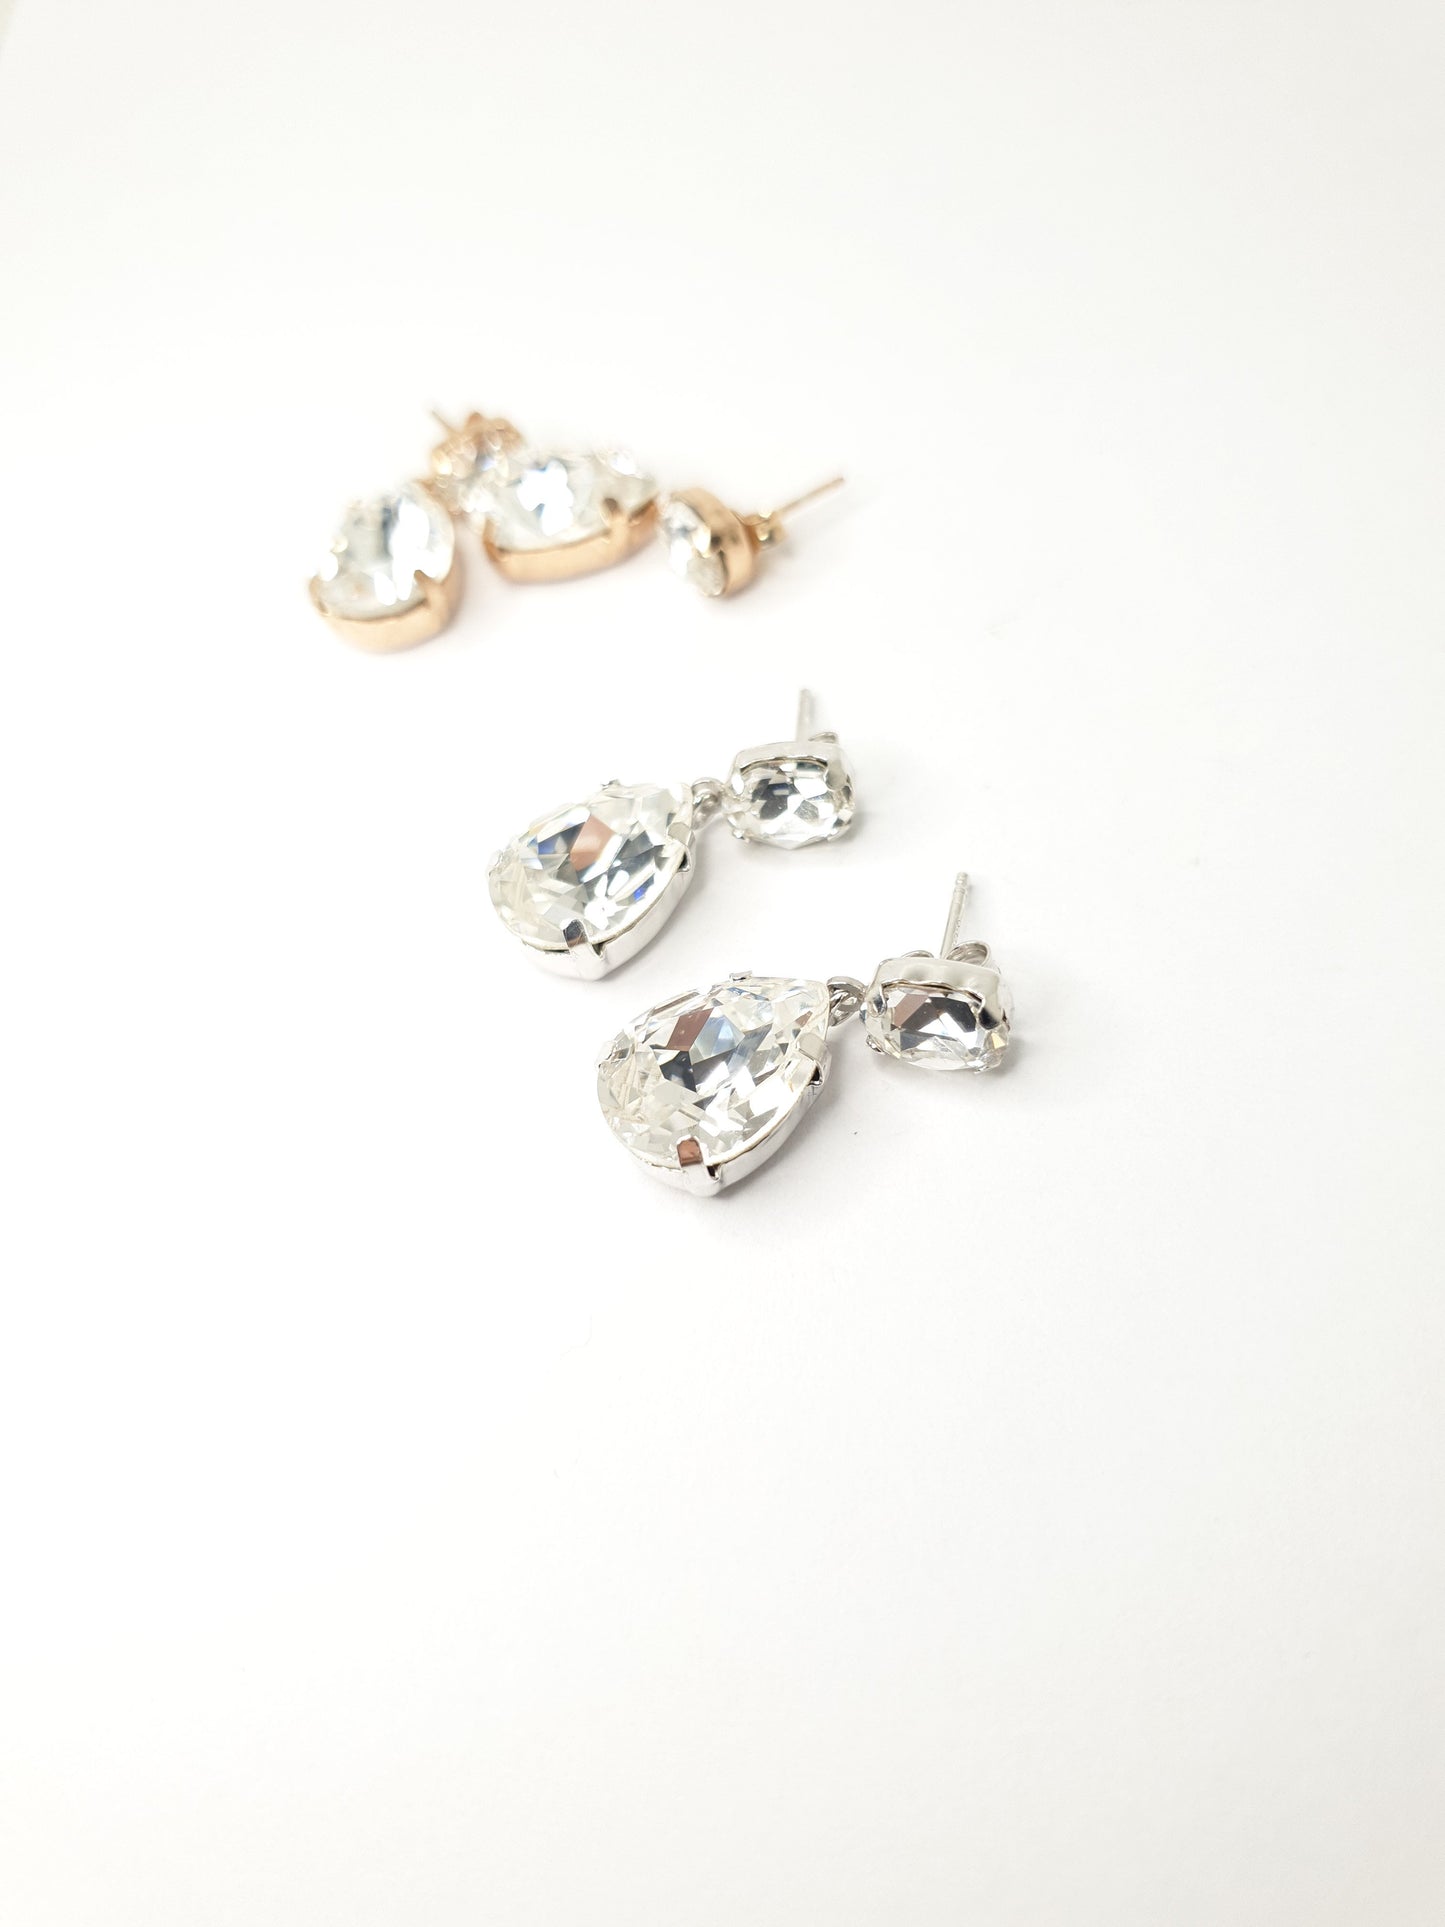 Hänge Ohrringe aus 925 Silber mit großen weißen Swarovski Kristallen, je Ohrring zwei ovale Kristalle, einer oben und einer unten.